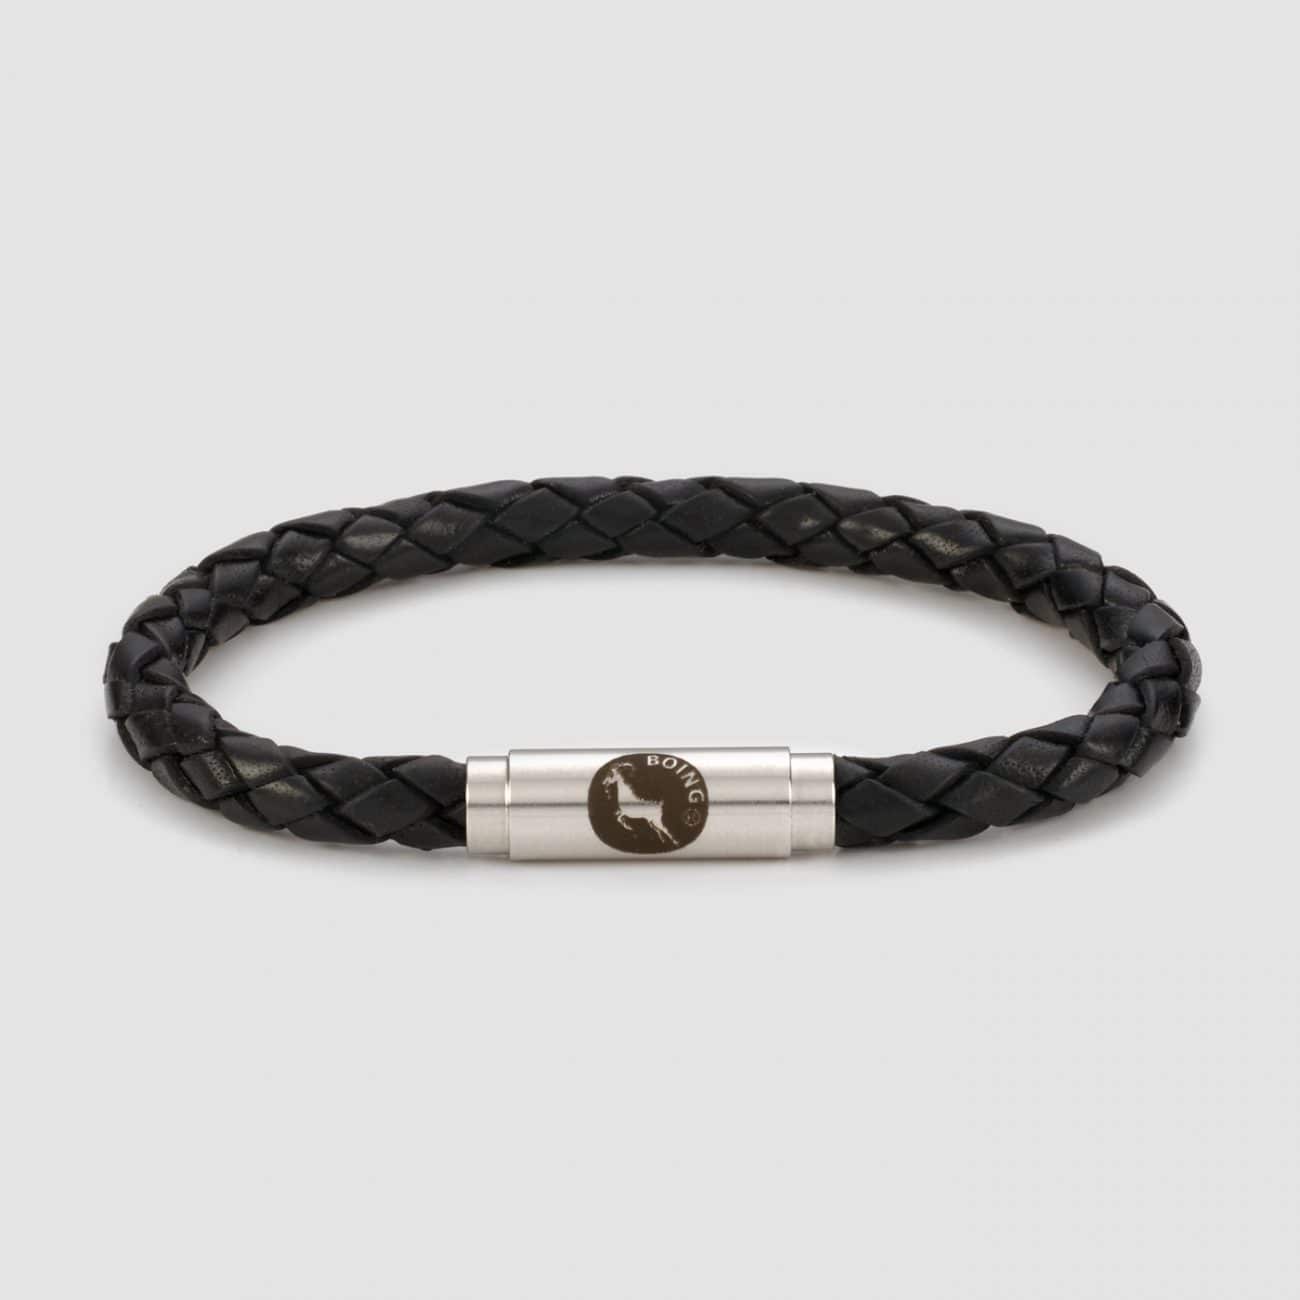 Brack leather bracelet